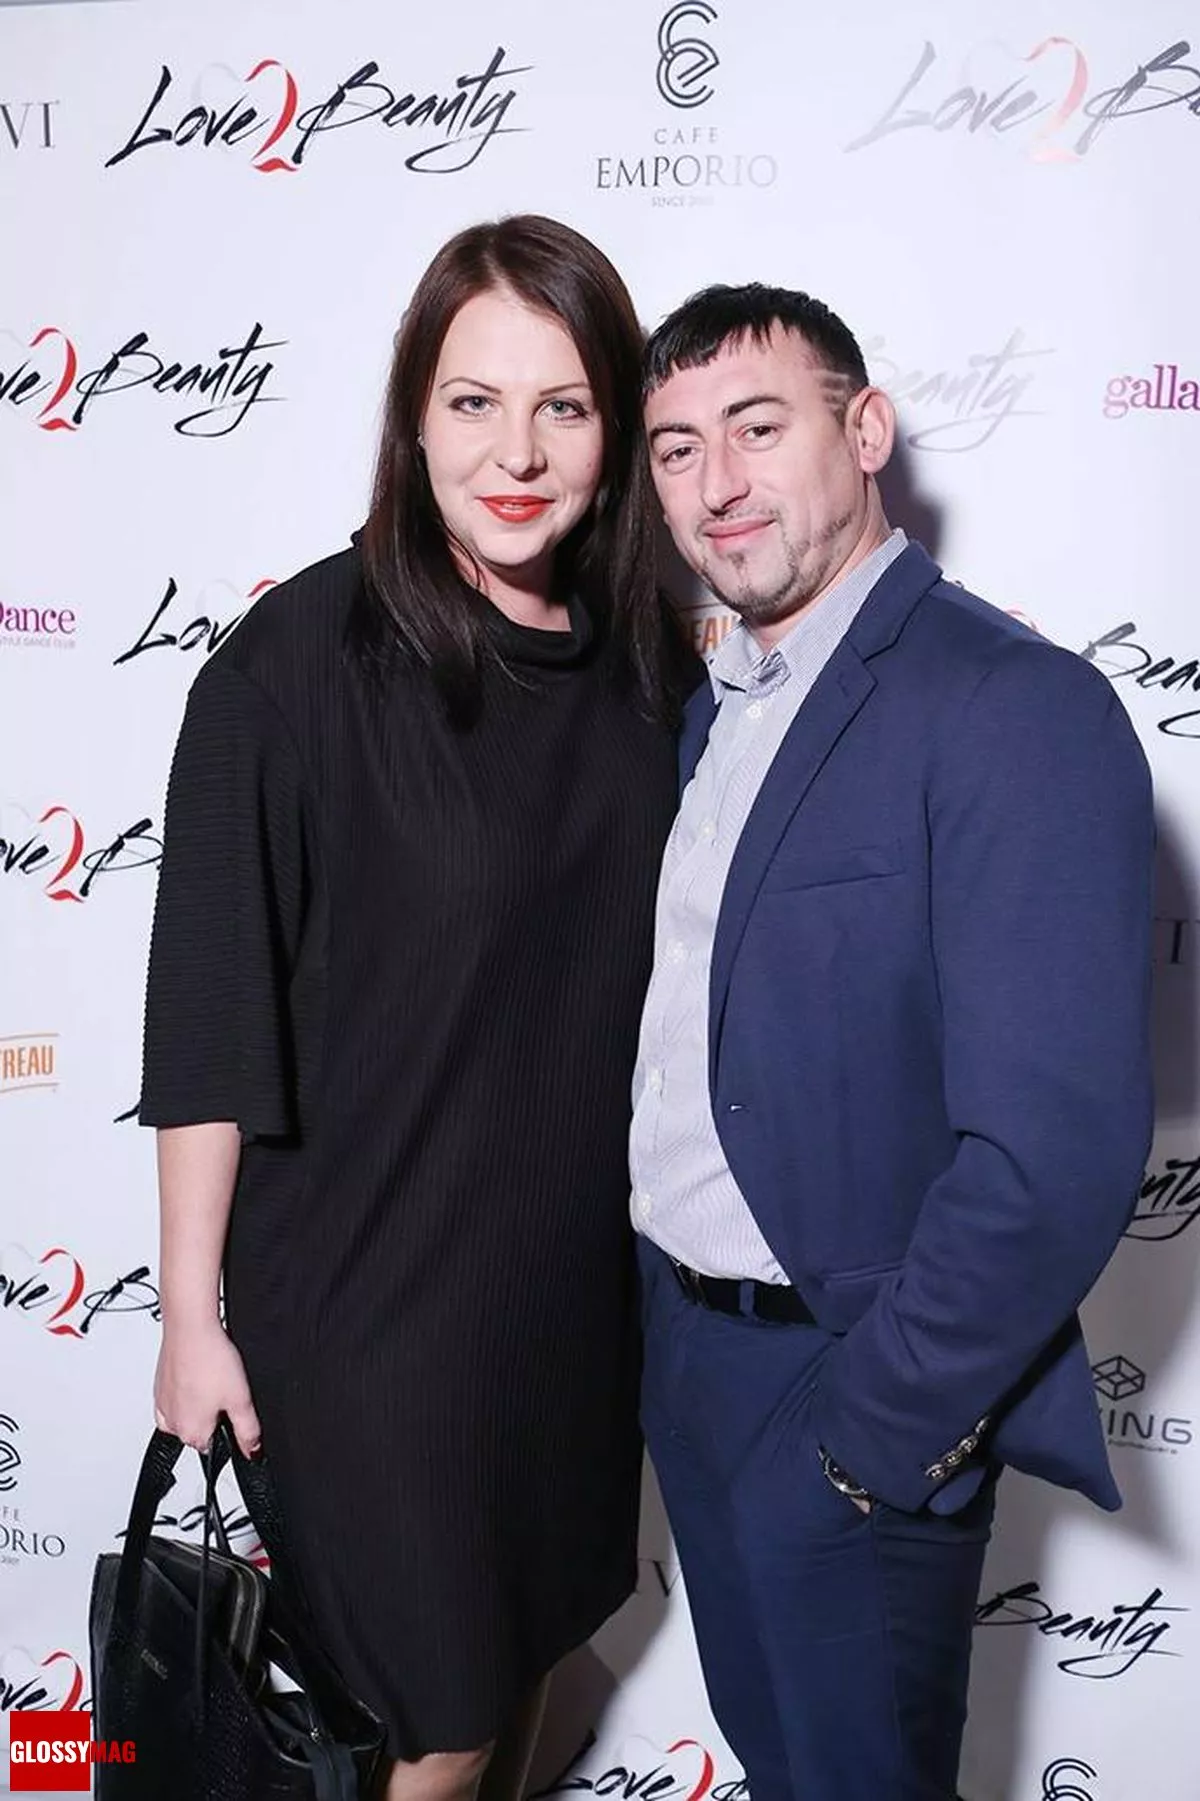 Ольга Ходырева с супругом на праздновании 2-летия Love2Beauty.ru в EMPORIO CAFE, 20 ноября 2014 г.